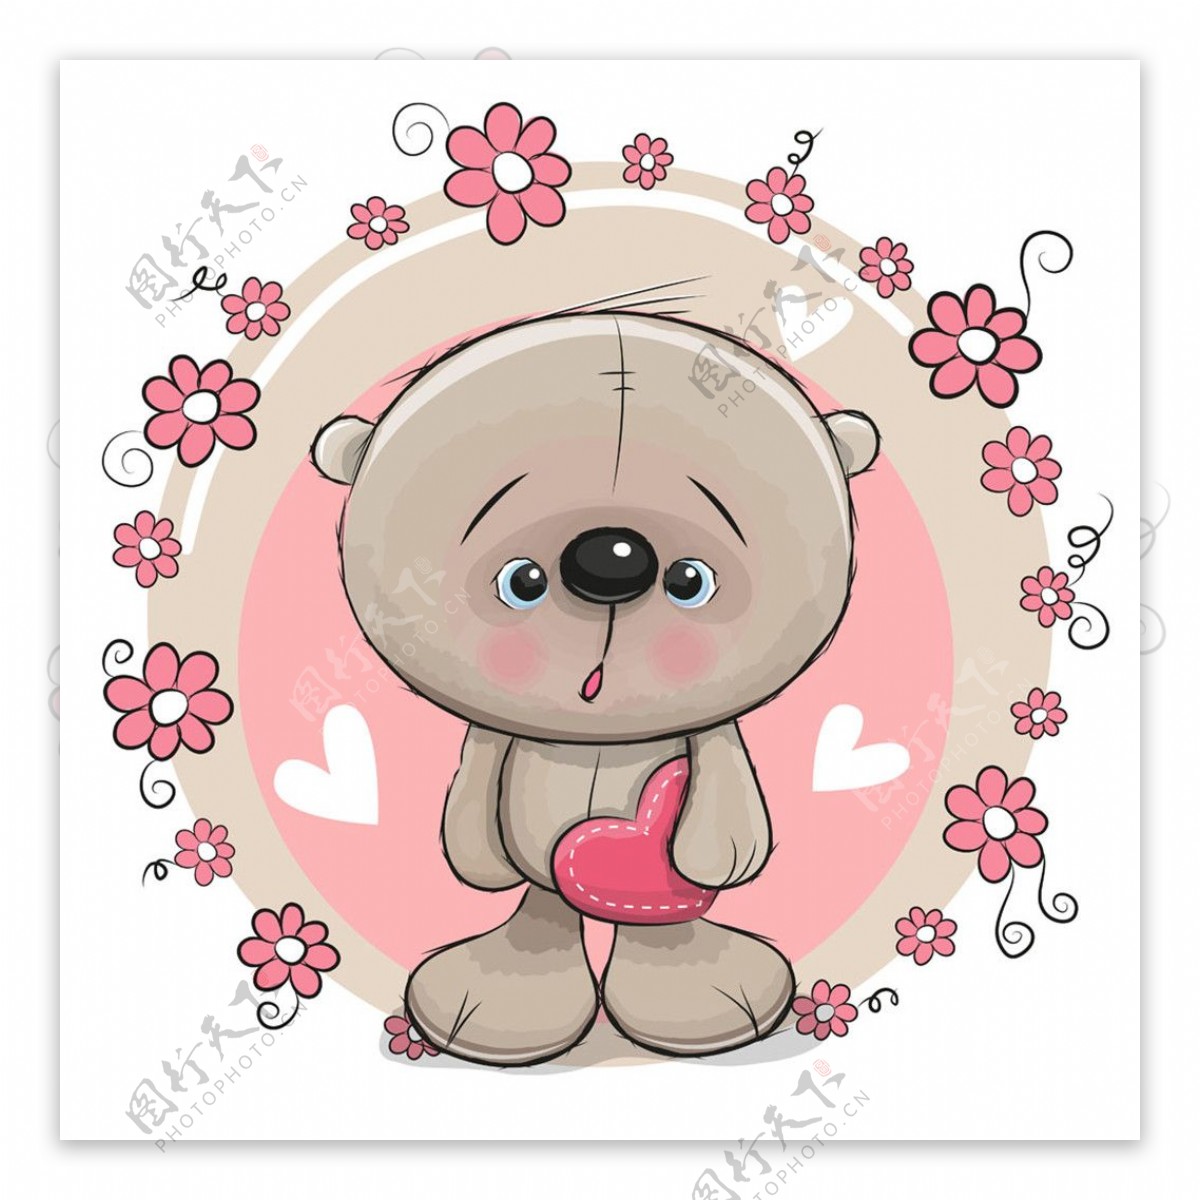 拿心形的小熊和花朵图片